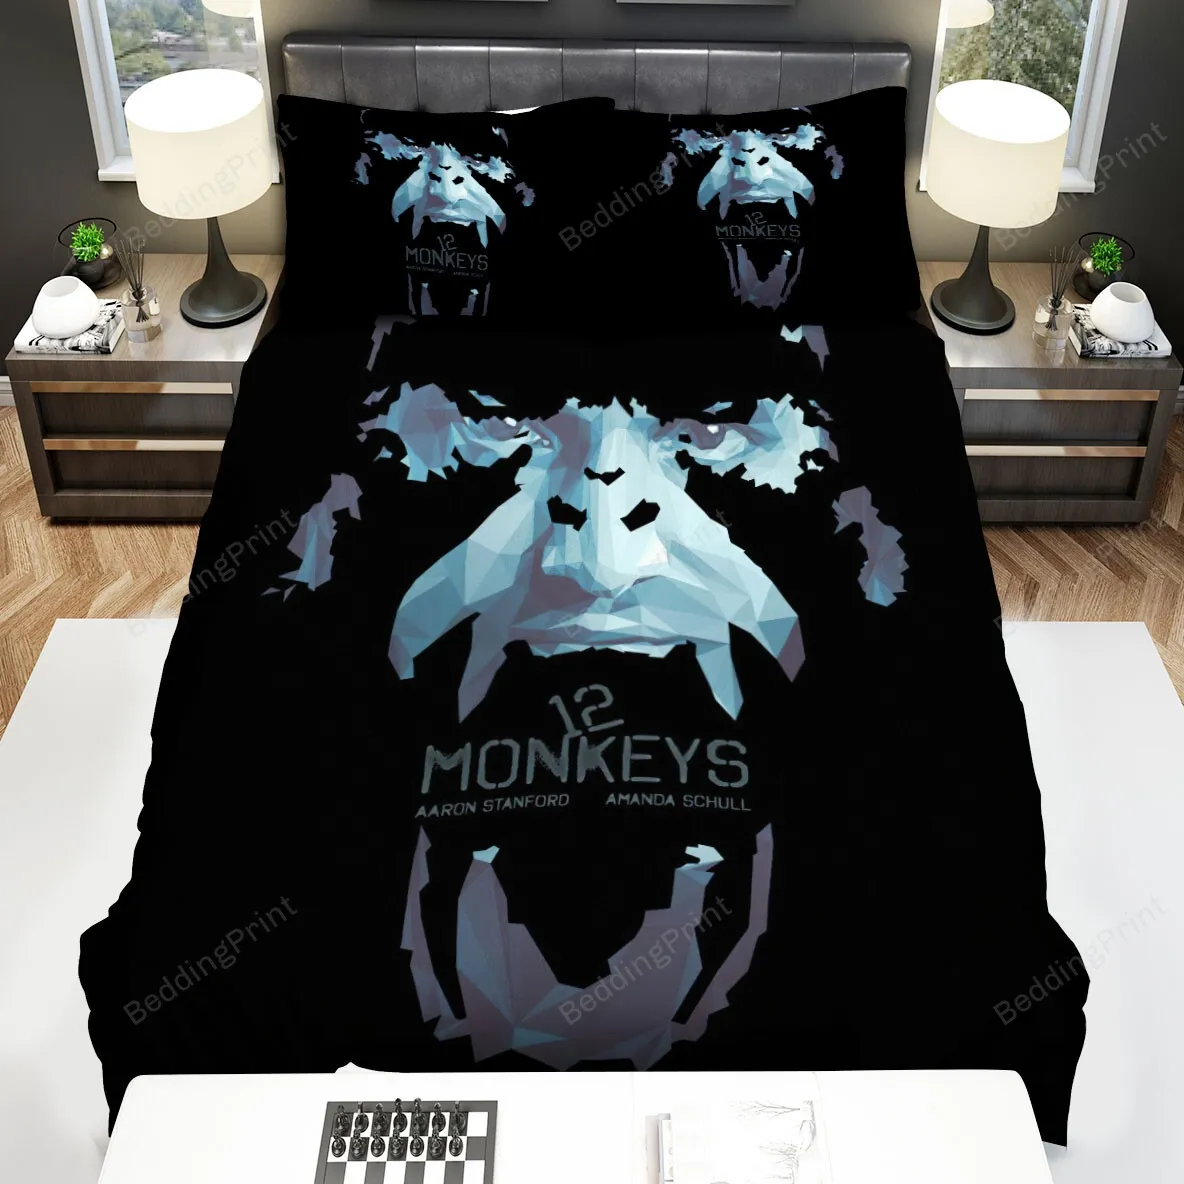 12 Monkeys (20152018) Poster Movie Poster Bed Sheets Spread Comforter Duvet Cover Bedding Sets Ver 2